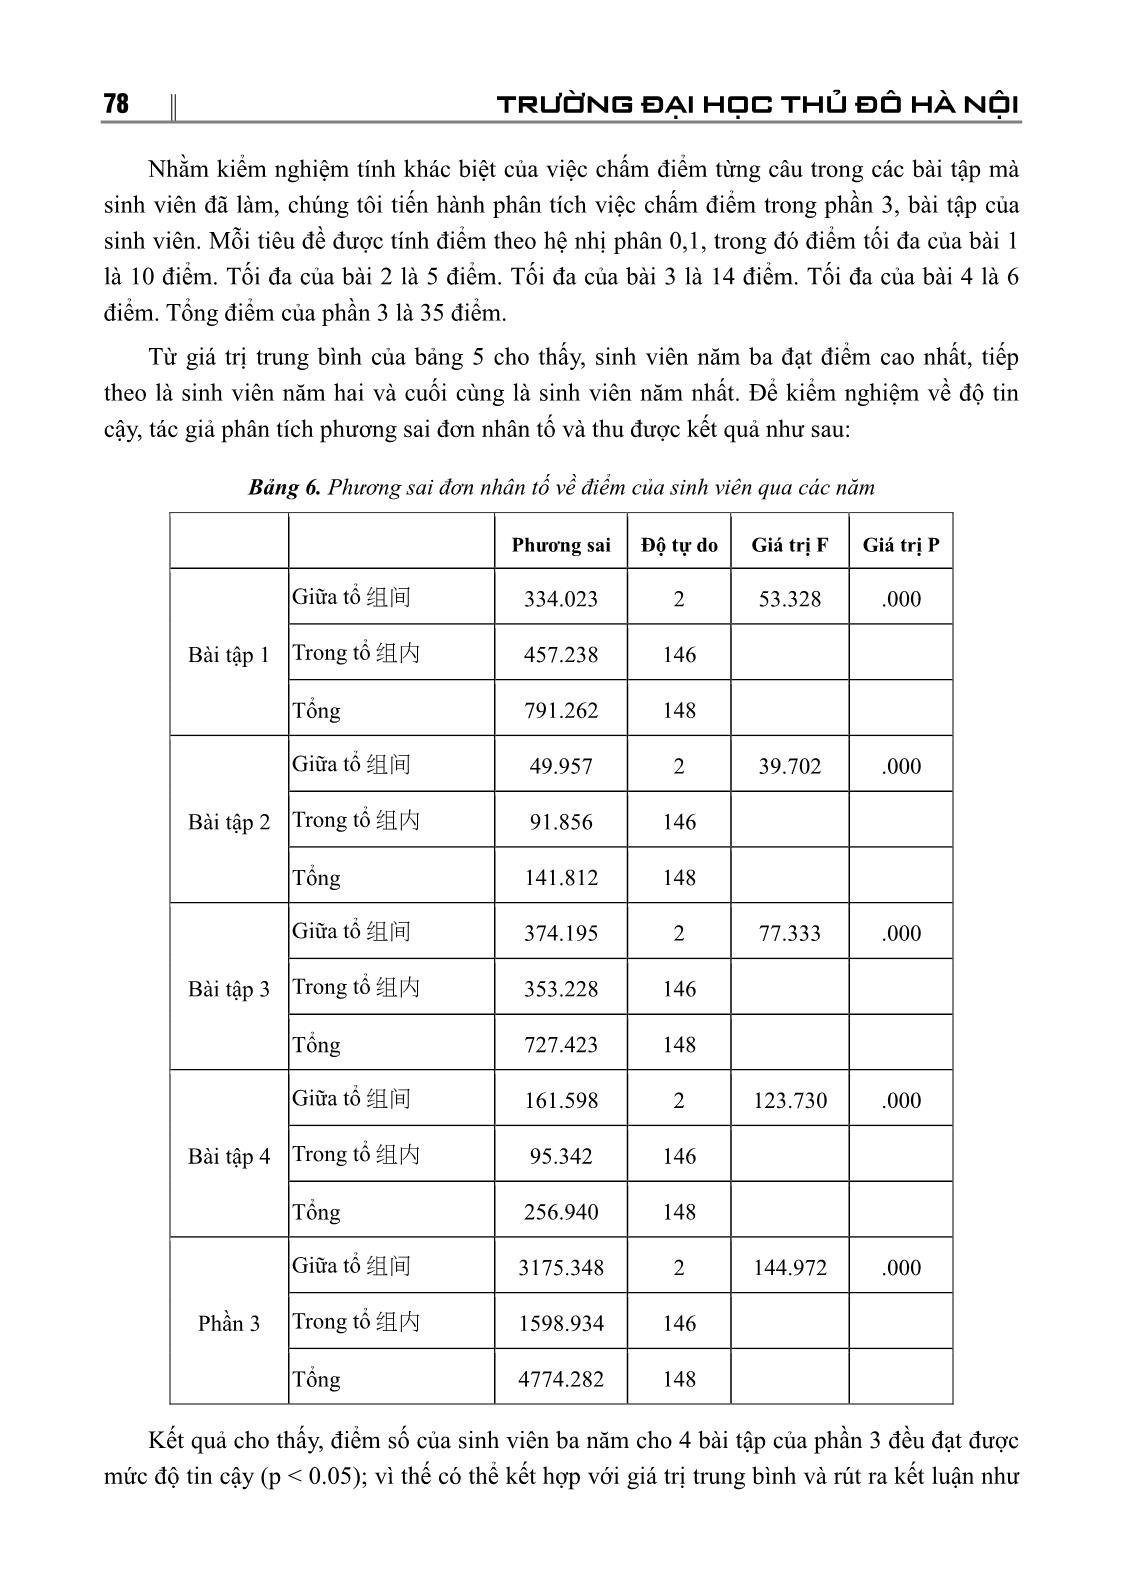 Những lỗi sai thường gặp của sinh viên chuyên ngành Tiếng Trung Quốc trường Đại học Sư phạm Hà Nội 2 trong sử dụng bổ ngữ kết quả trang 5